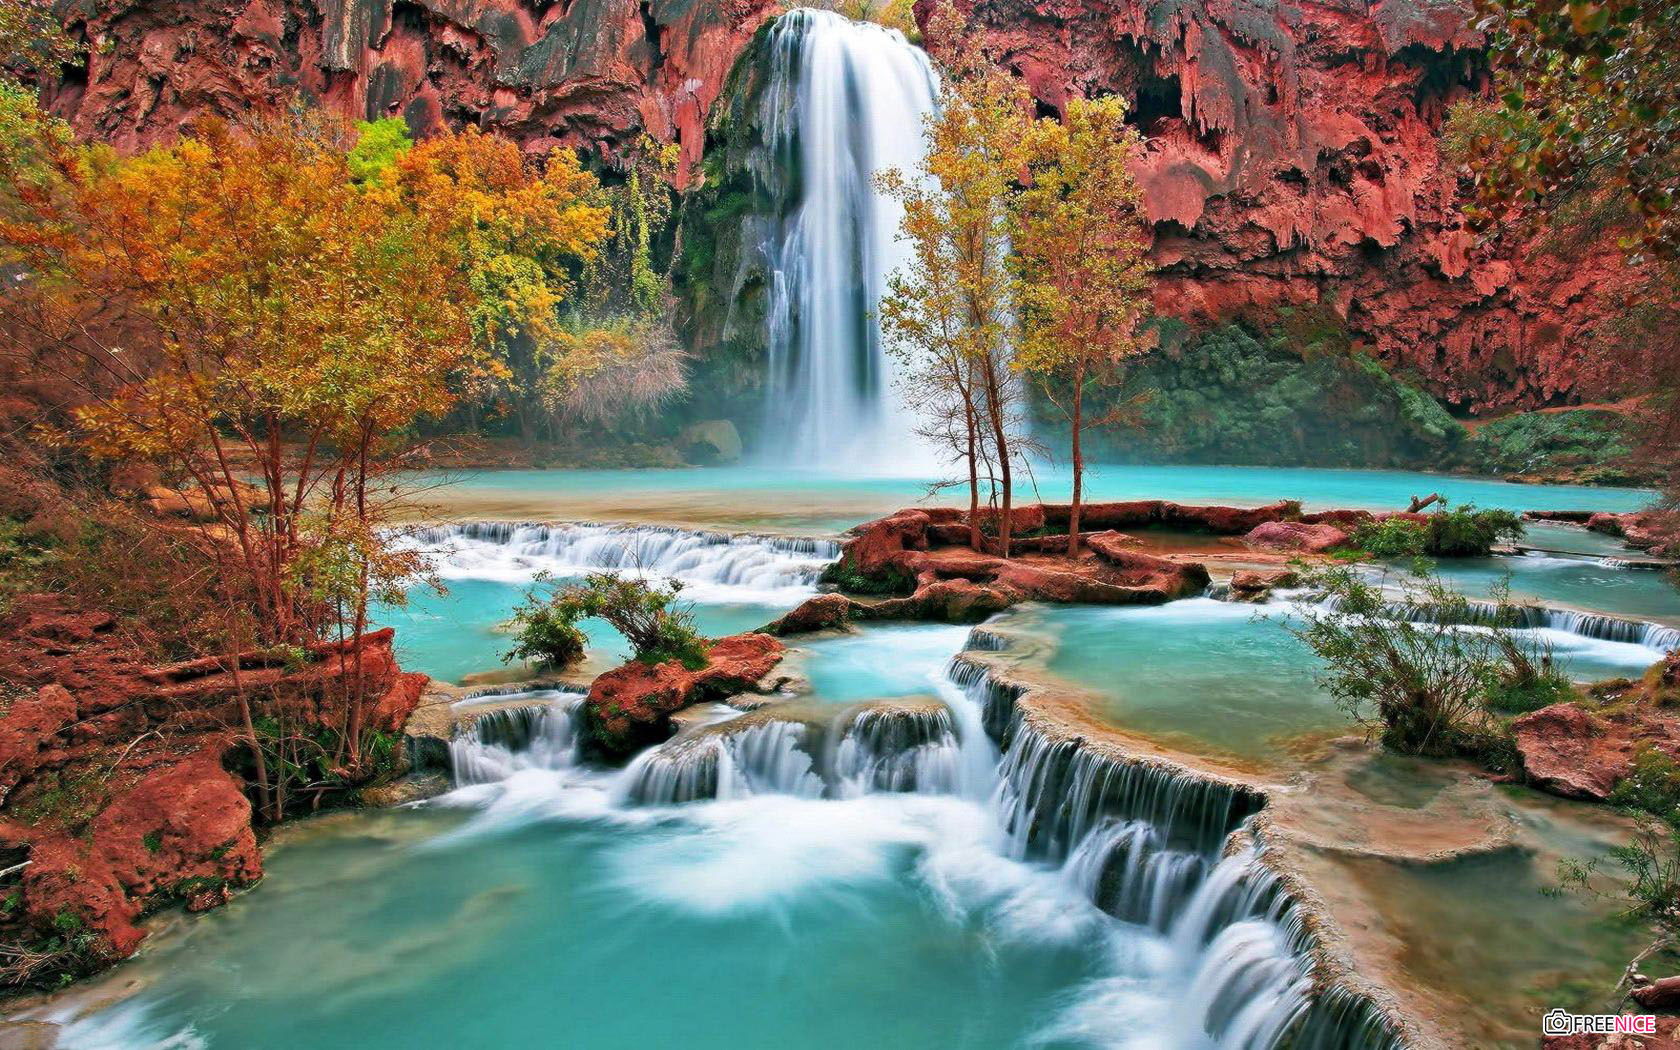 Khám phá thiên nhiên vô cùng hùng vĩ qua bức hình nền thác nước tuyệt đẹp. Sự kết hợp giữa màu sắc, ánh sáng và nước chảy đầy sức sống sẽ mang đến cho bạn cảm giác đầy thăng hoa.